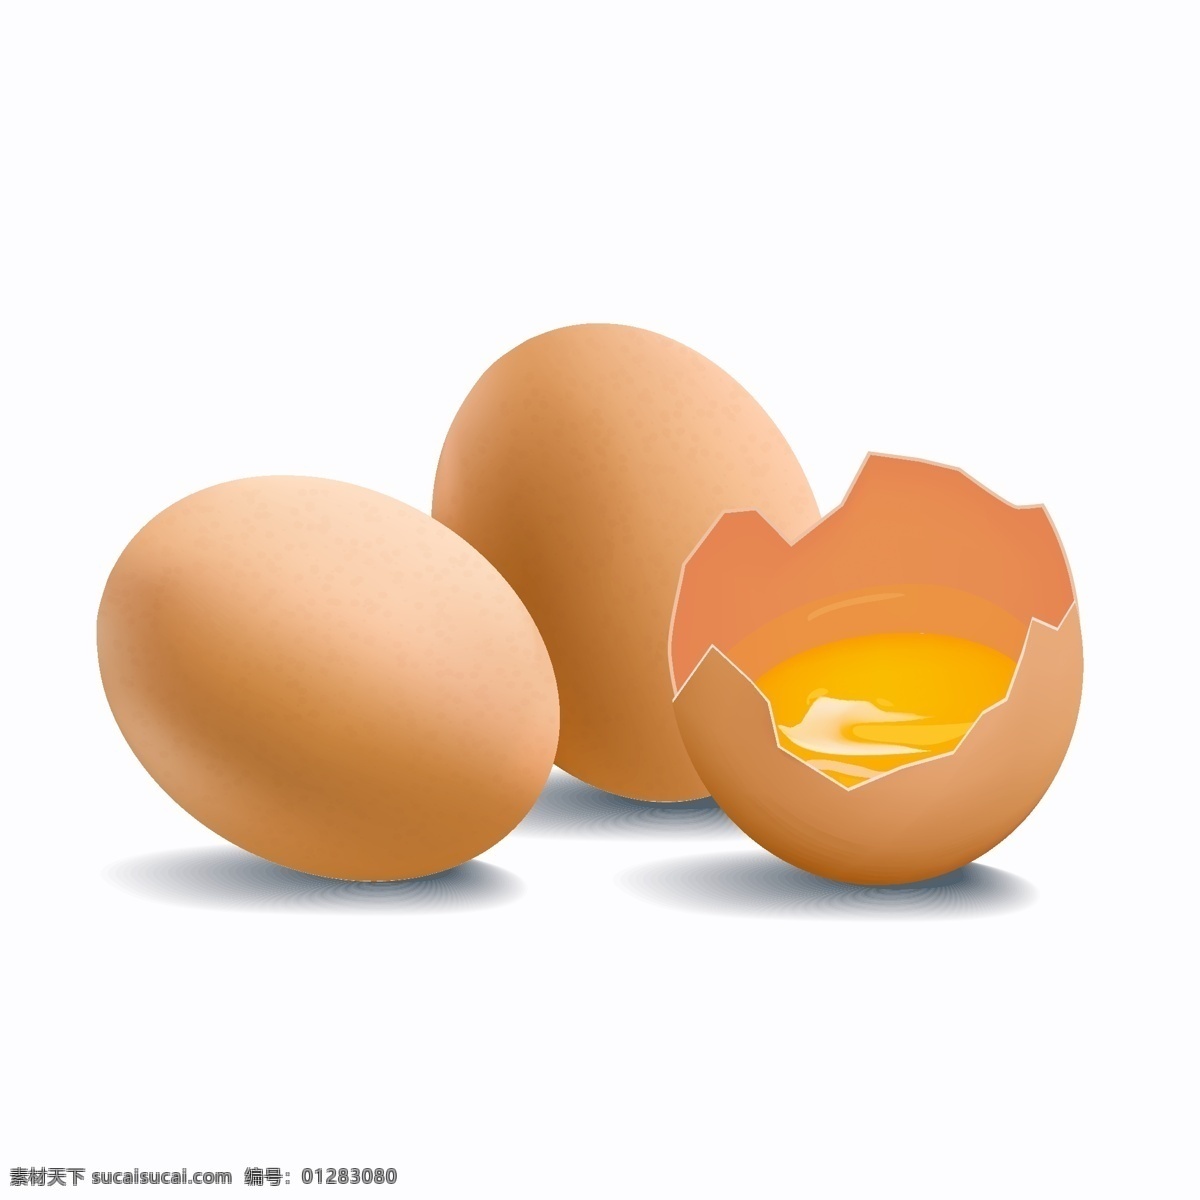 鸡蛋 蛋清 蛋黄 打碎的鸡蛋 鸡蛋特写 鸡蛋摄影 土鸡蛋 蛋类 食材 禽蛋 笨鸡蛋